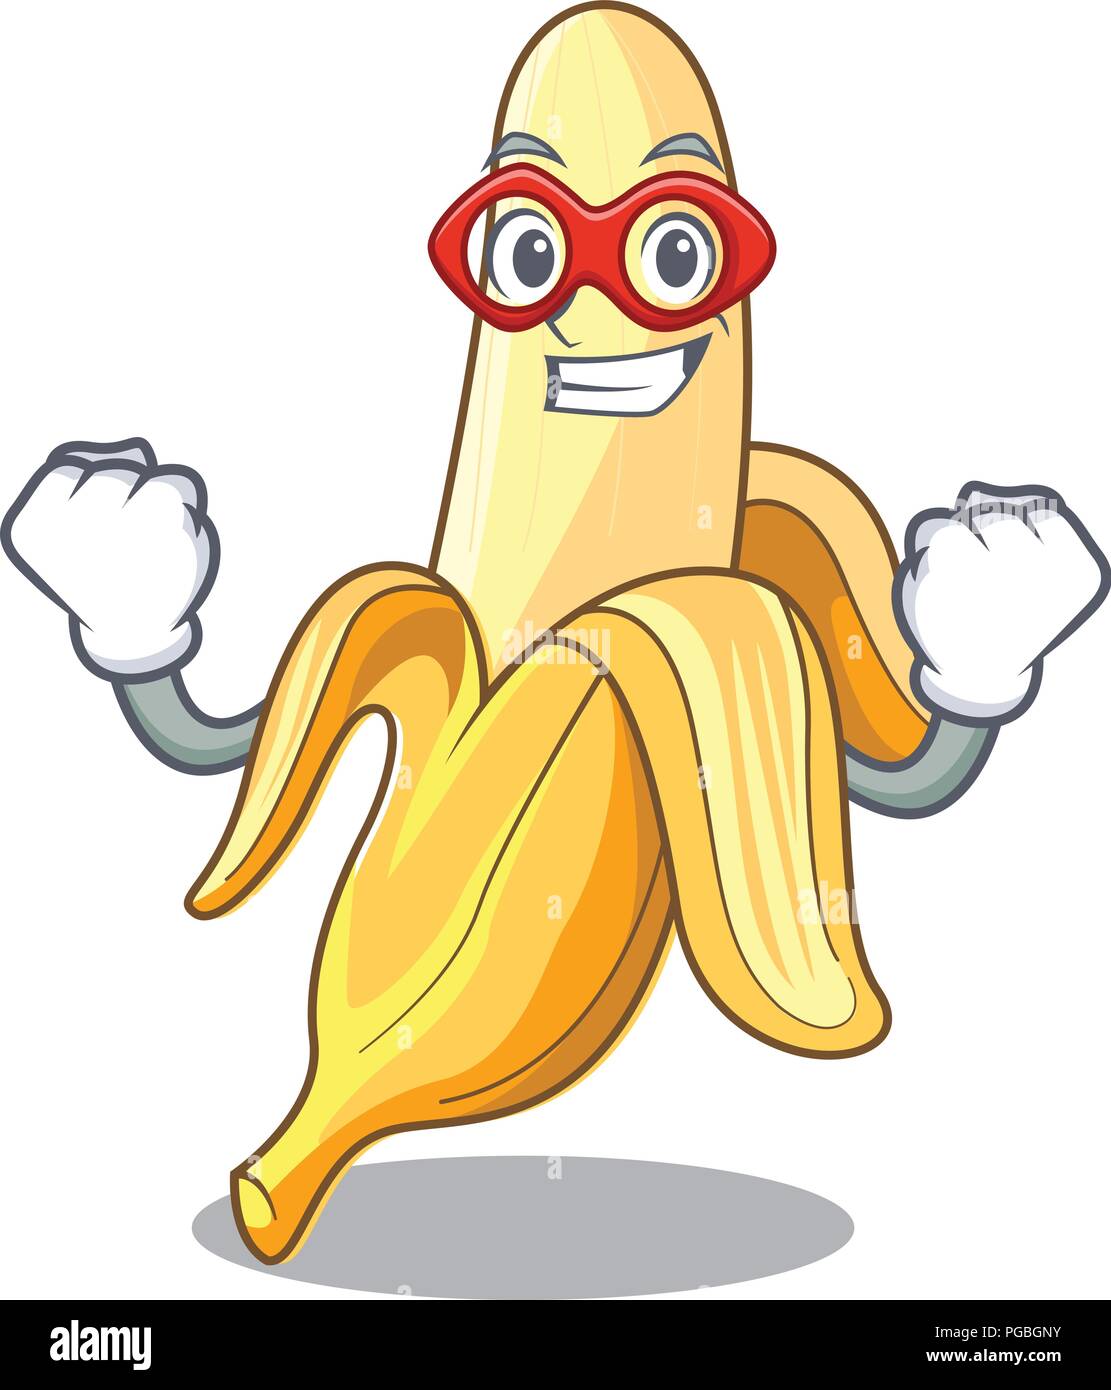 Включи big banana. Банан персонаж. Банан с глазами. Бананчик с глазками. Банан мультяшный.